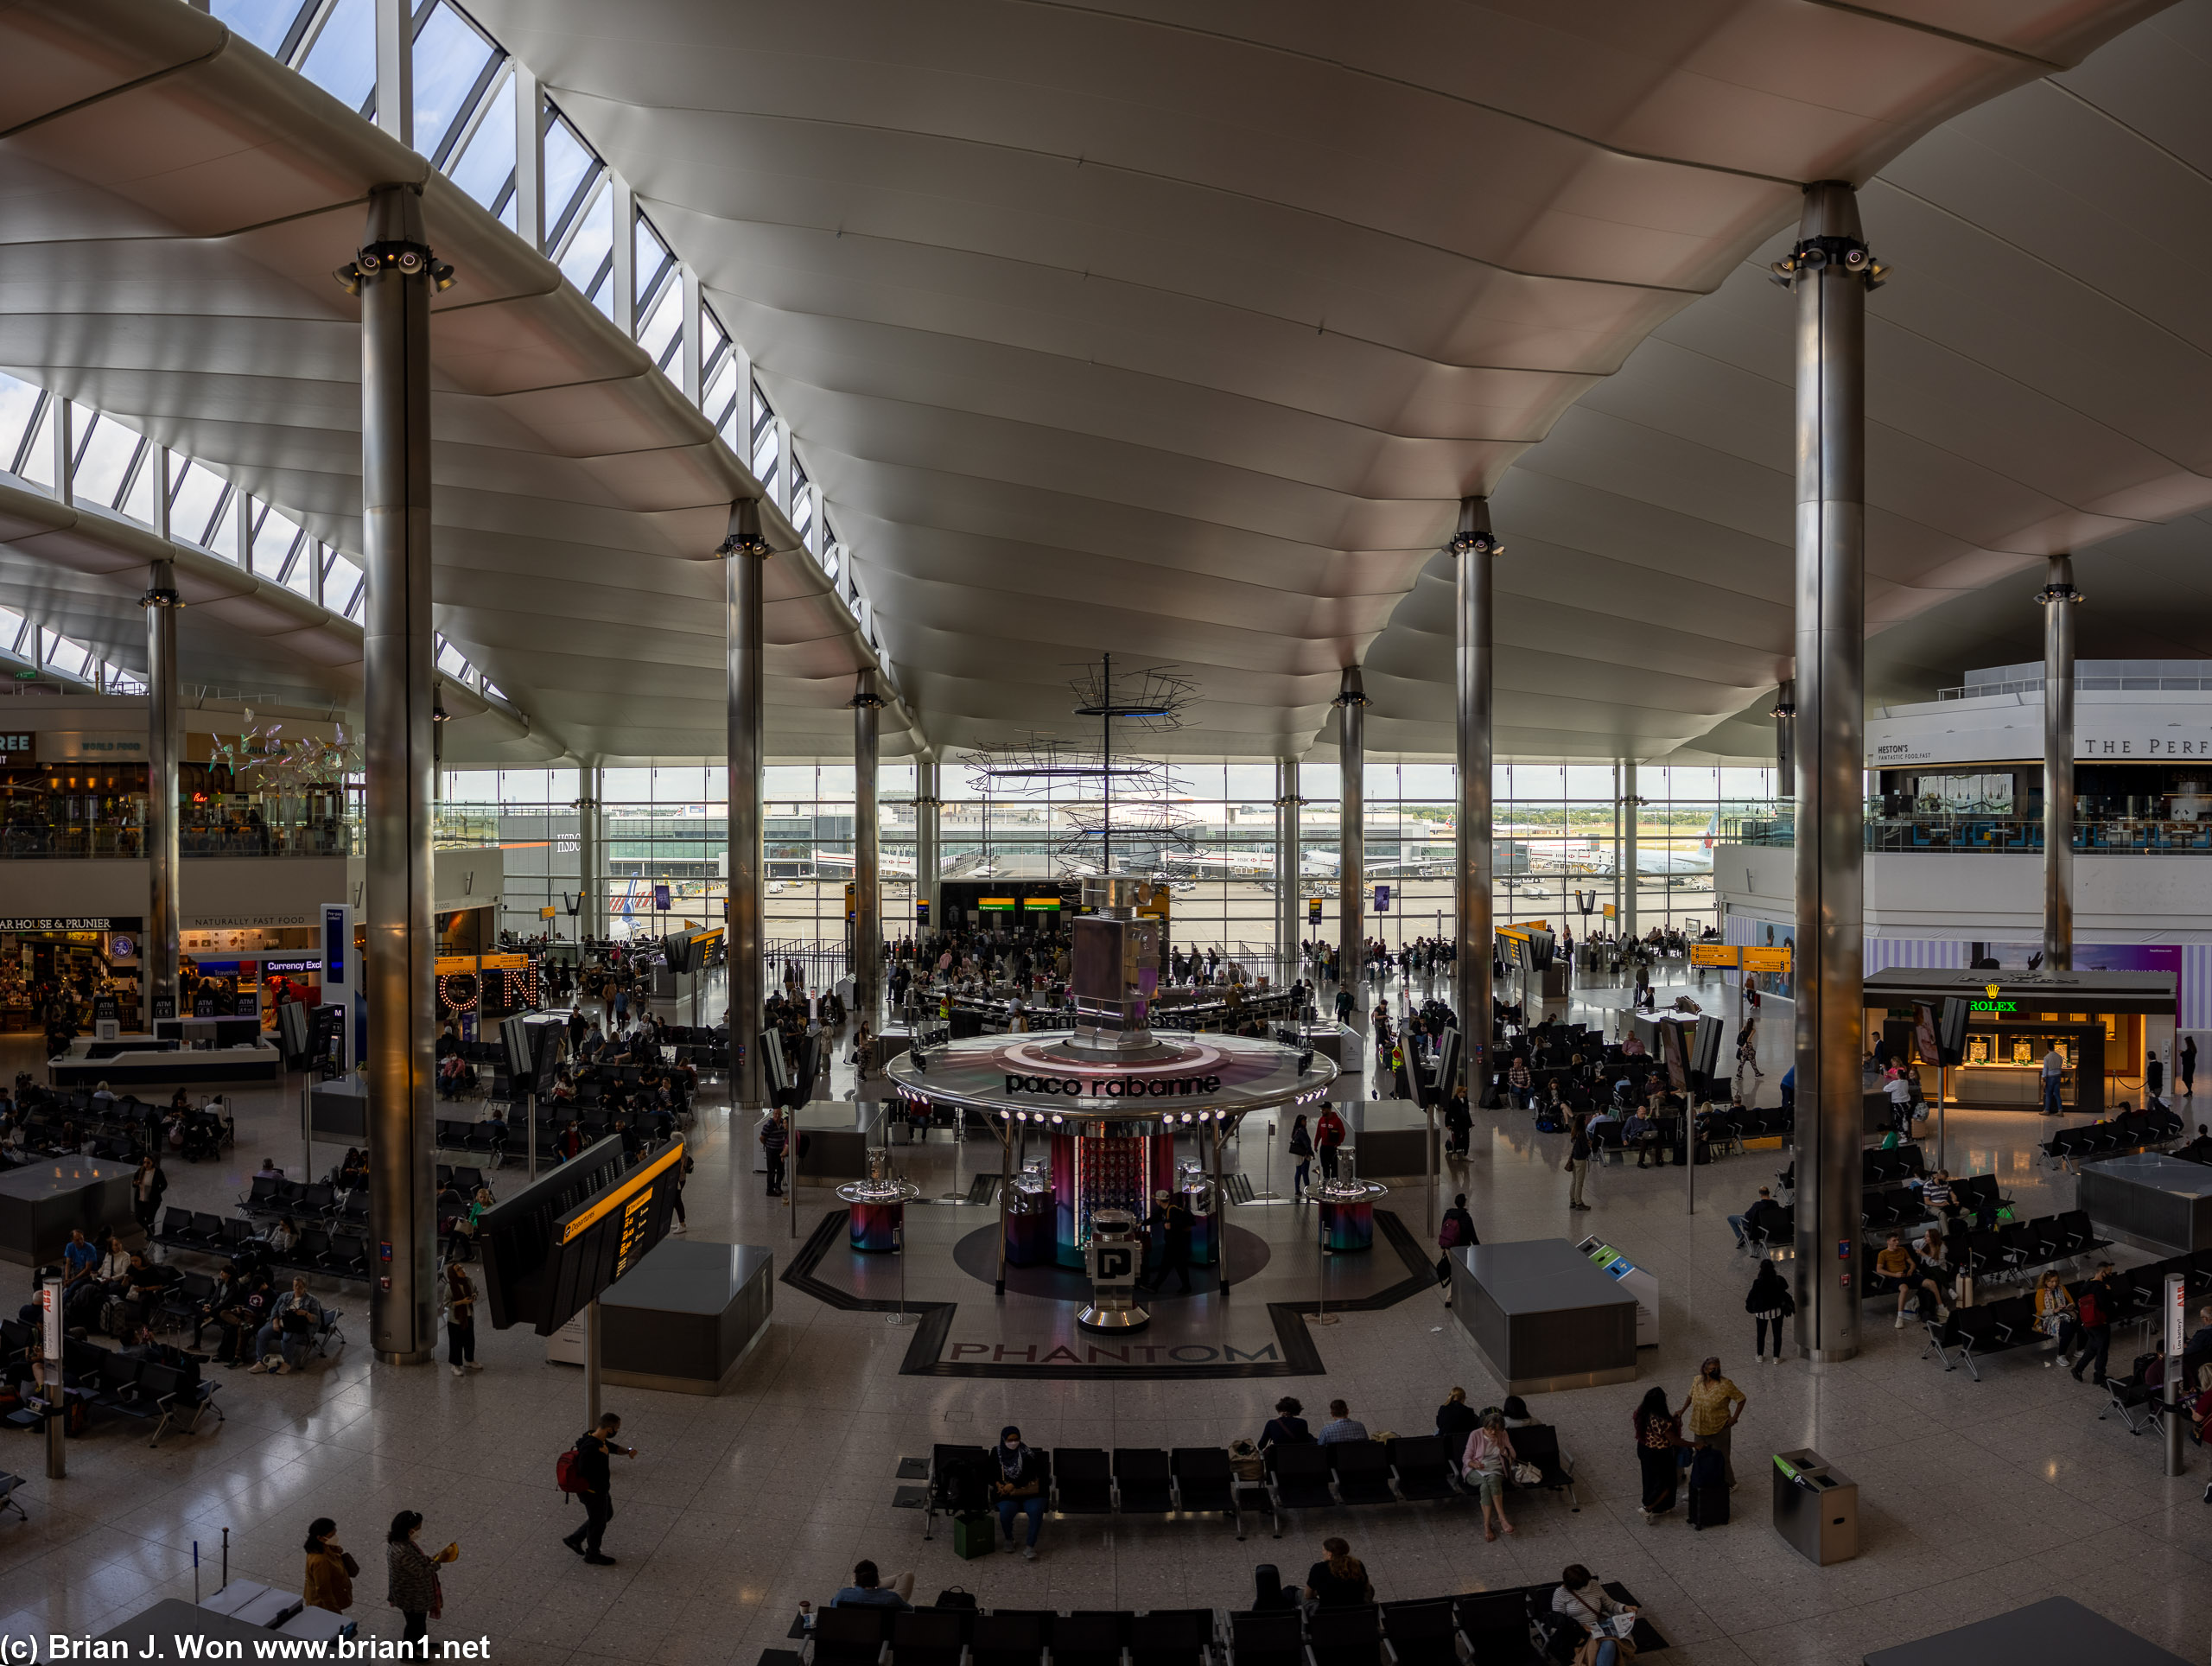 Terminal 2 - The Queen's Terminal, London Heathrow International Airport.